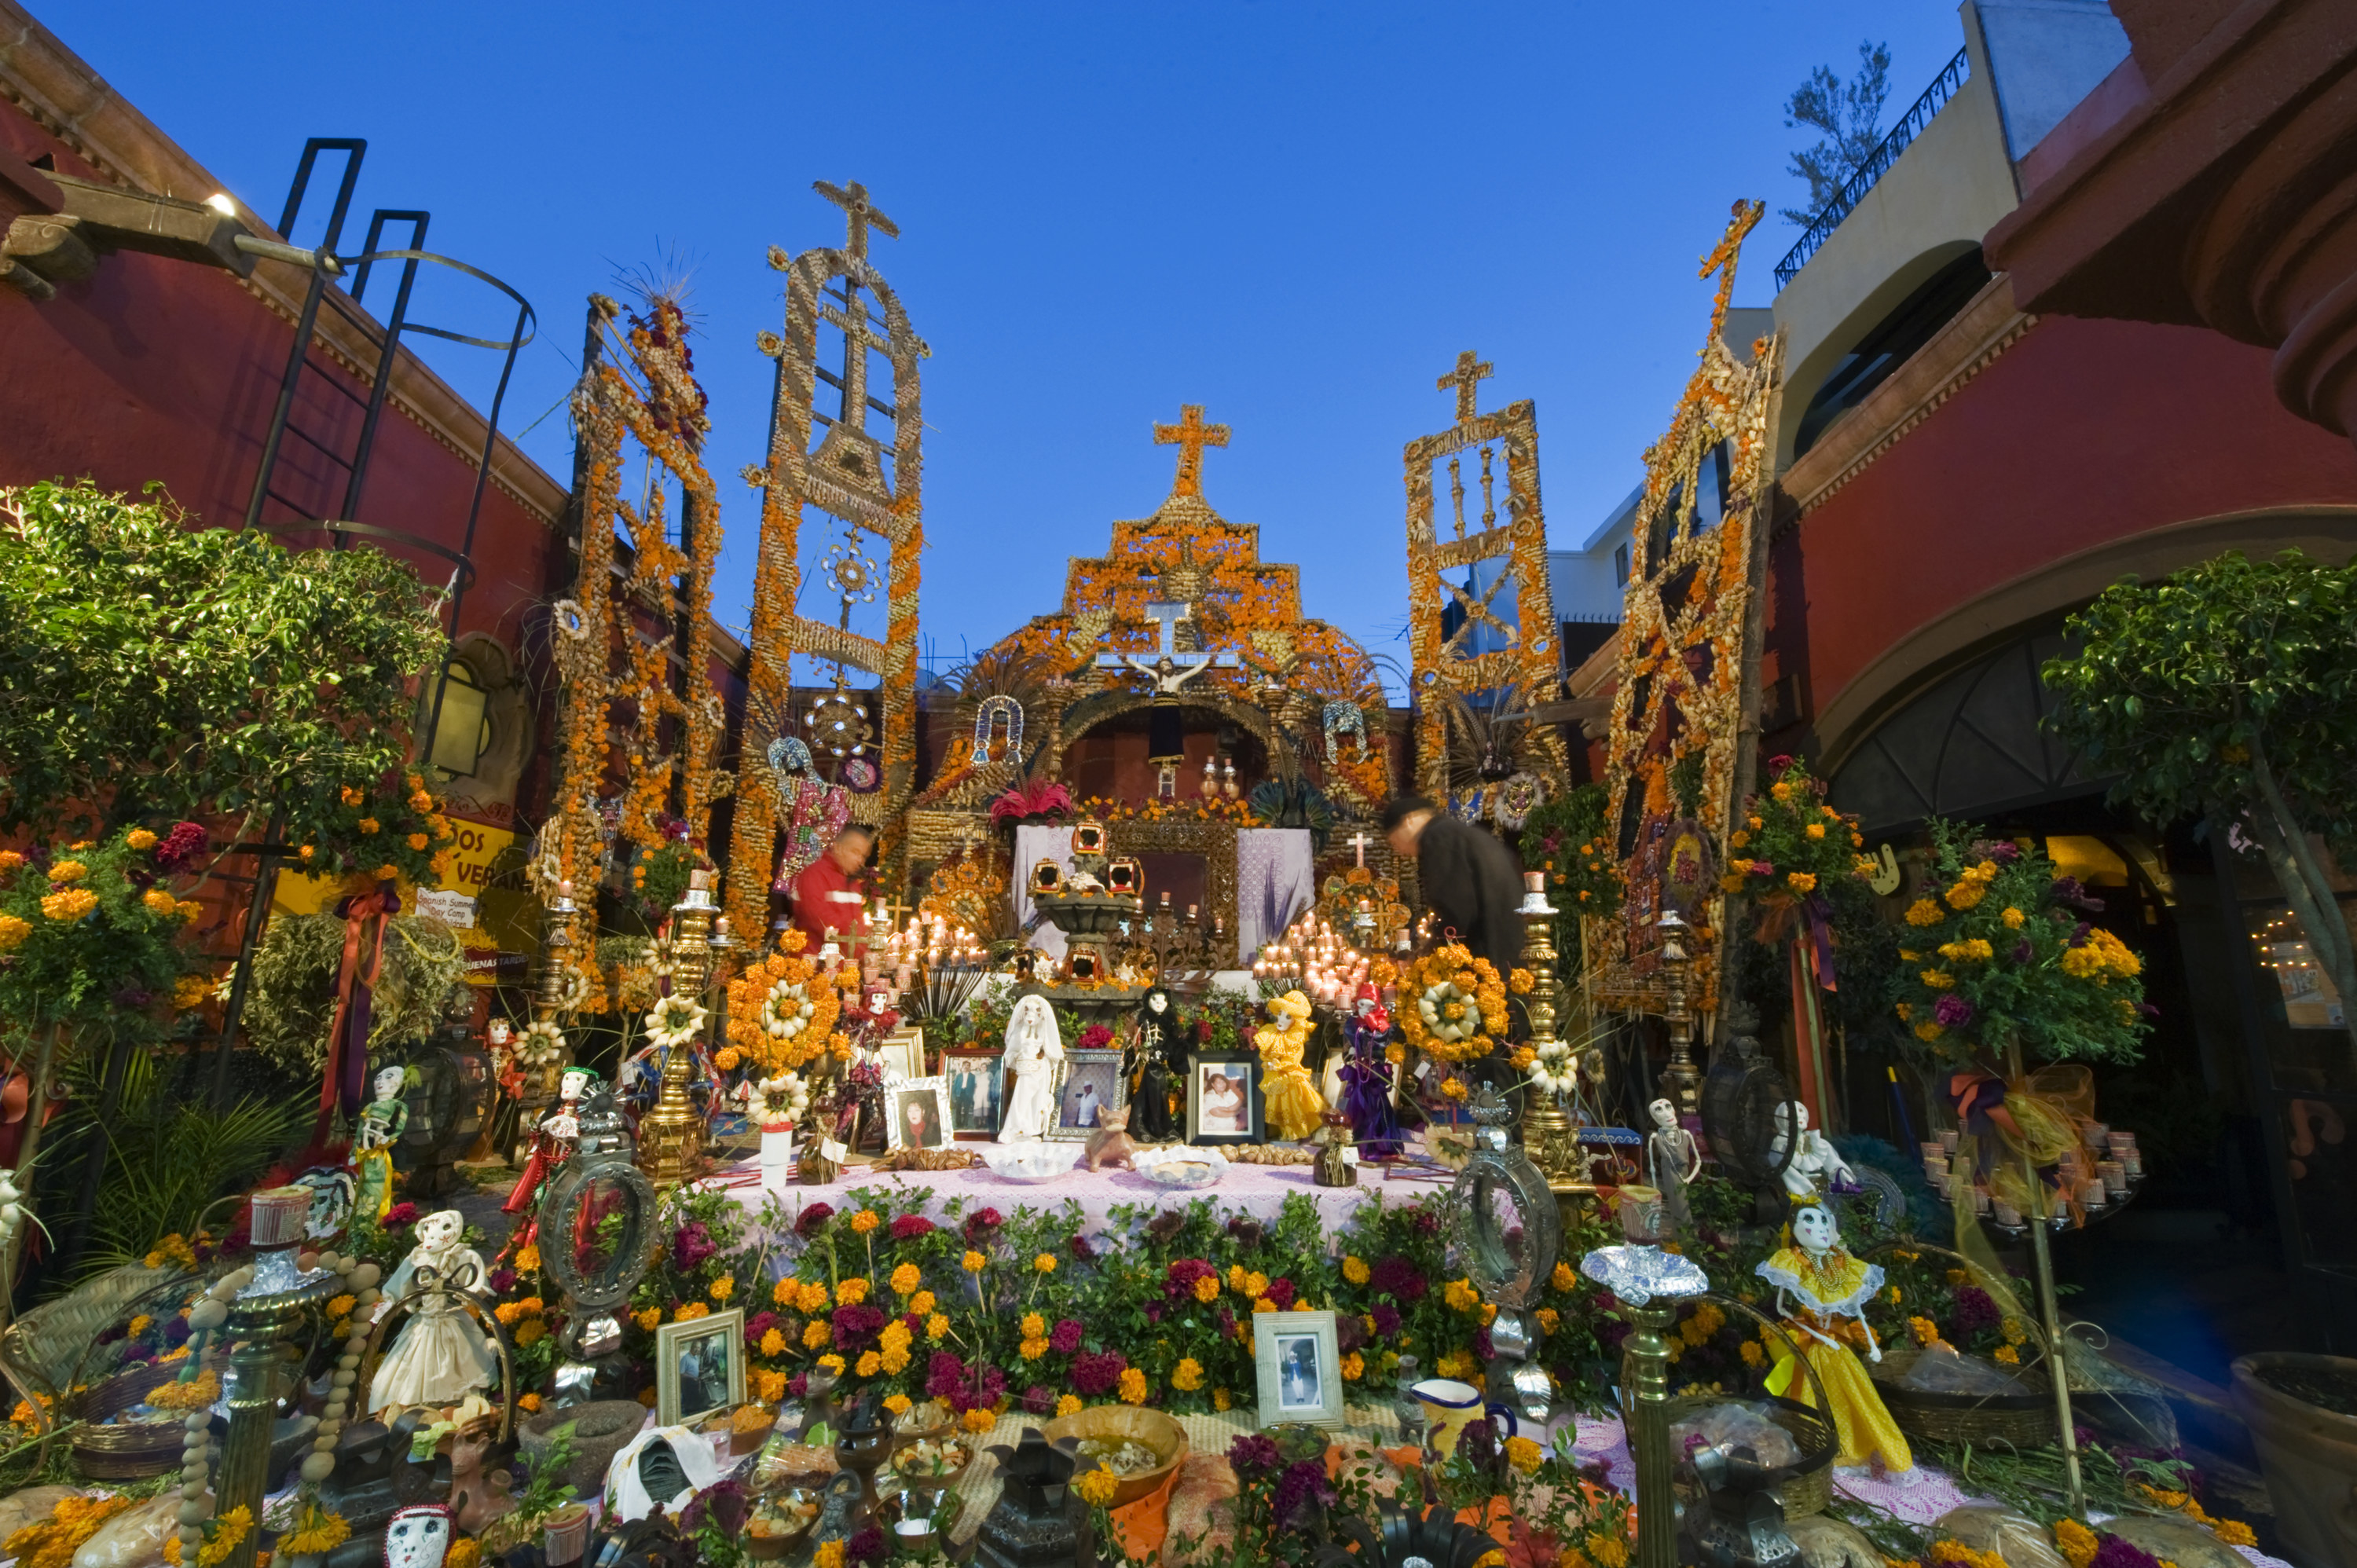 4. Celebrate Día de los Muertos in Mexico. 